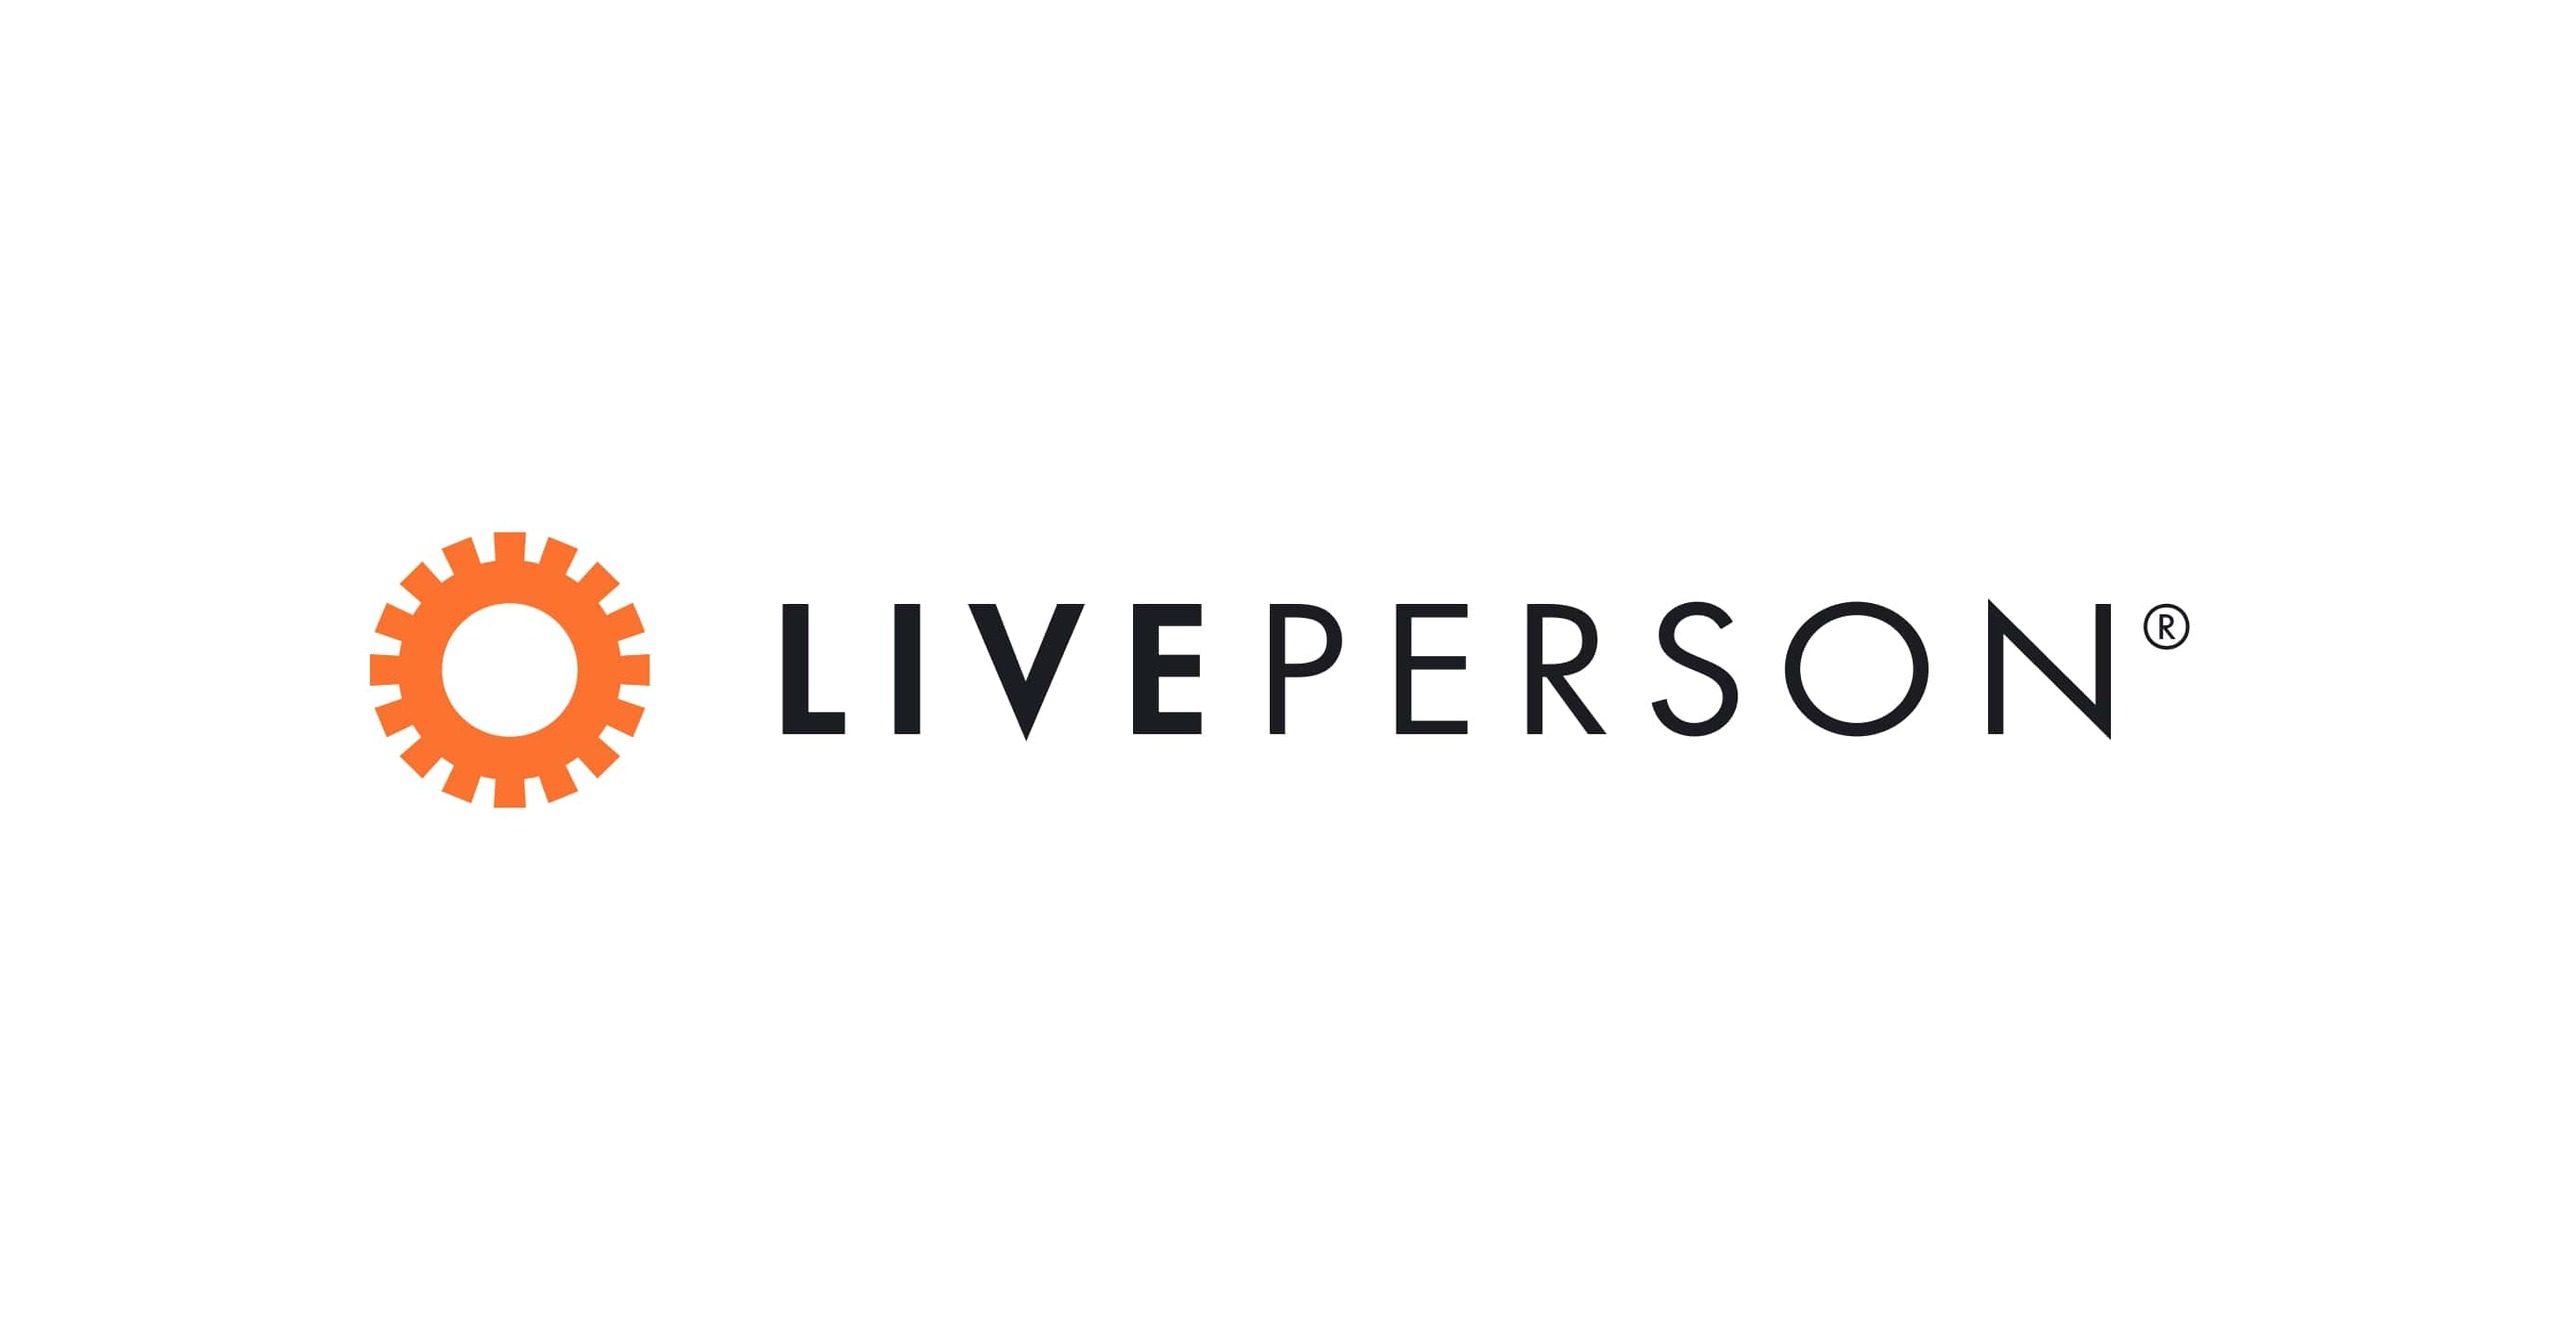 LivePerson relata subsídios de persuasão sob a regra de listagem NASDAQ 5635(c)(4)